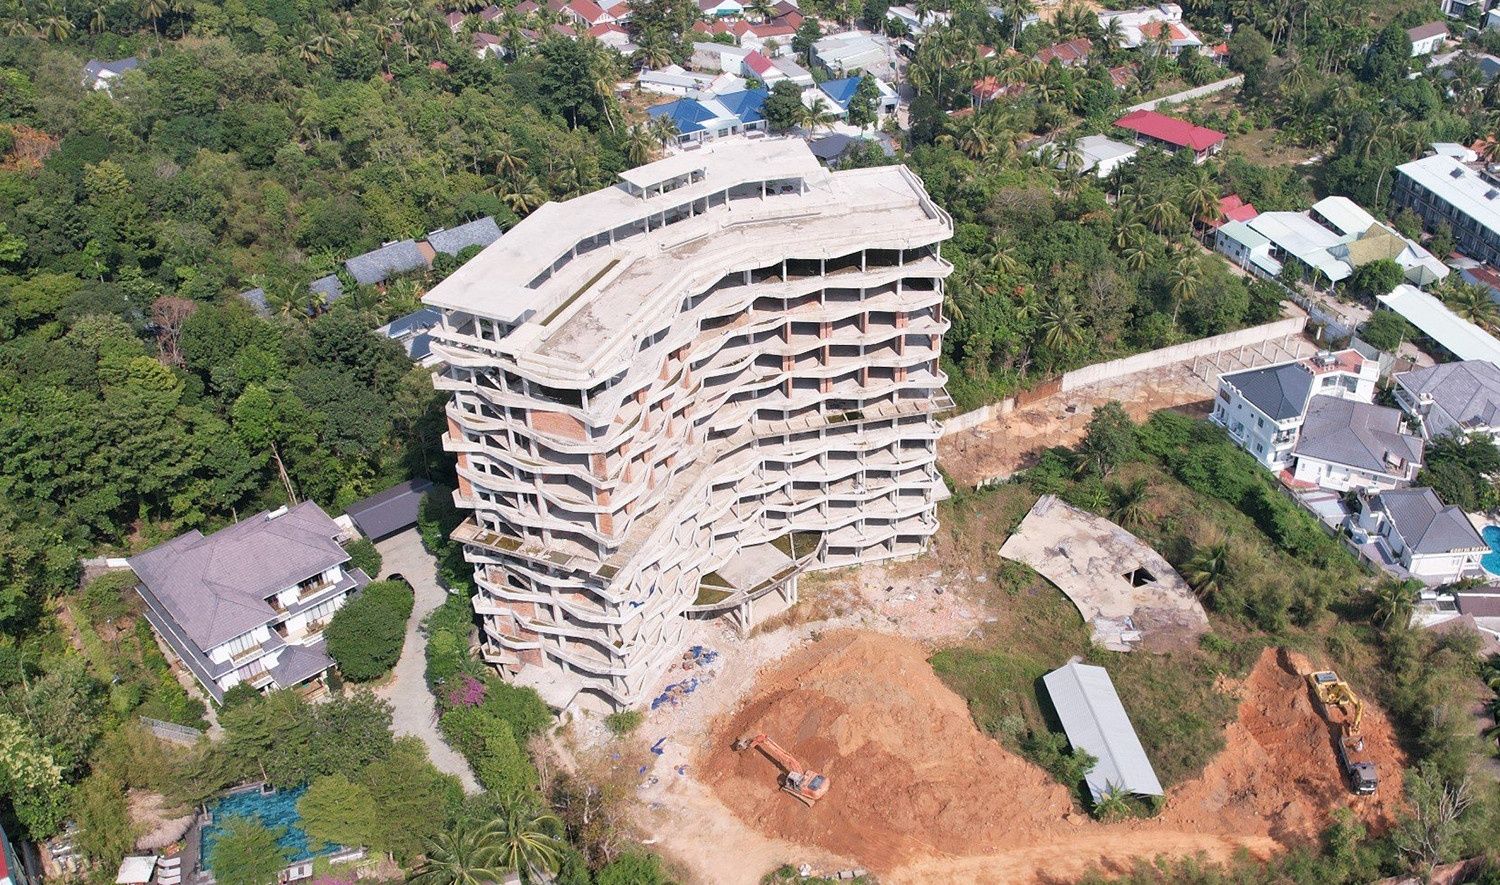 Hoàn tất tháo dỡ khách sạn 12 tầng xây dựng trái phép ở Phú Quốc - ảnh 2